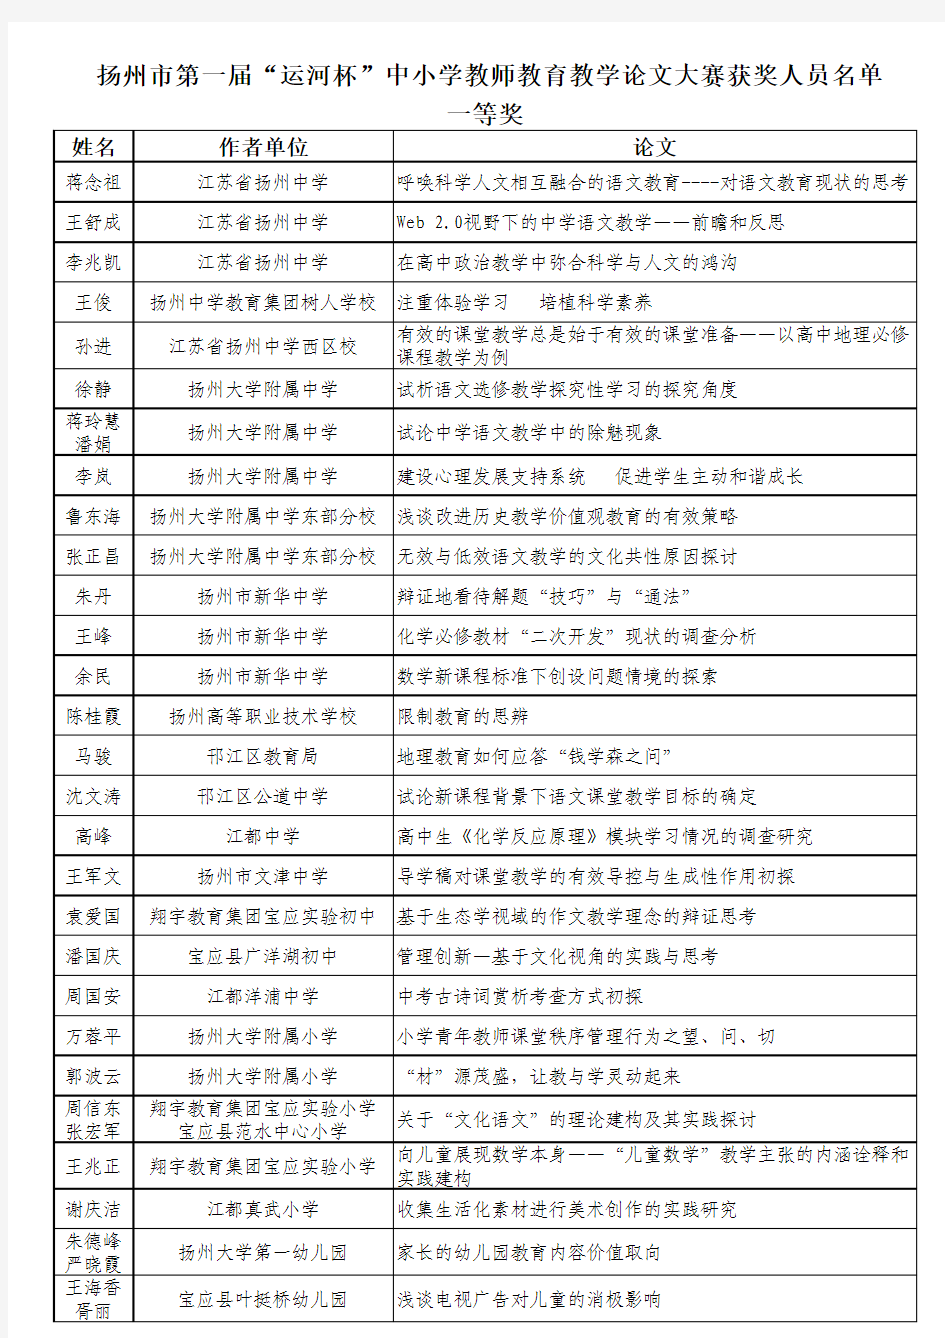 扬州市第一届“运河杯”中小学教师教育教学论文大赛获奖人员名单